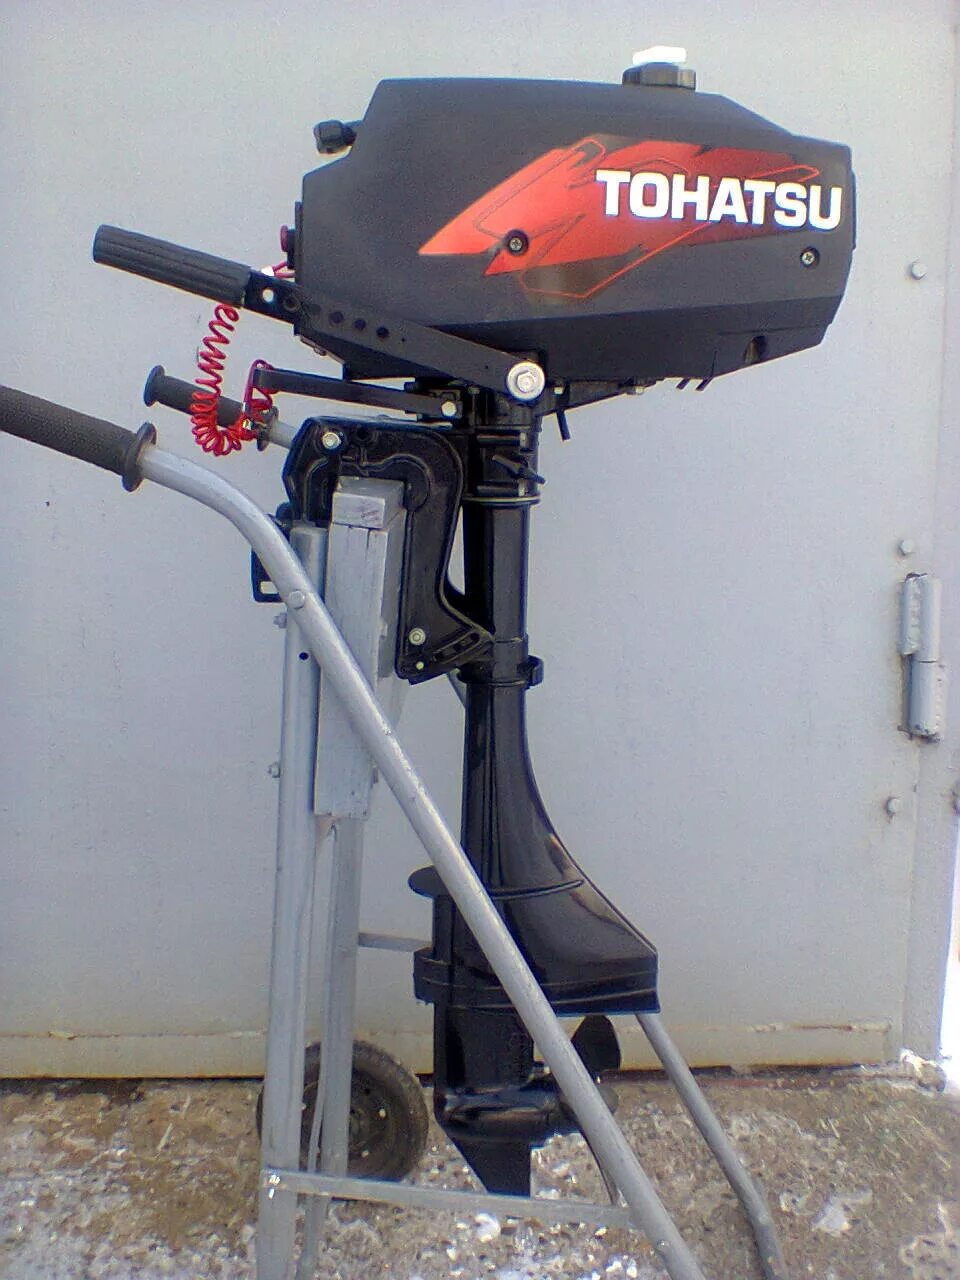 Моторы тохатсу бу купить. Лодочный мотор Tohatsu m 3.5b2 s. Лодочный мотор Тохатсу 3.5. Лодочный мотор Тохатсу 2.5. Лодочный мотор Tohatsu м 3.5 b2 s.